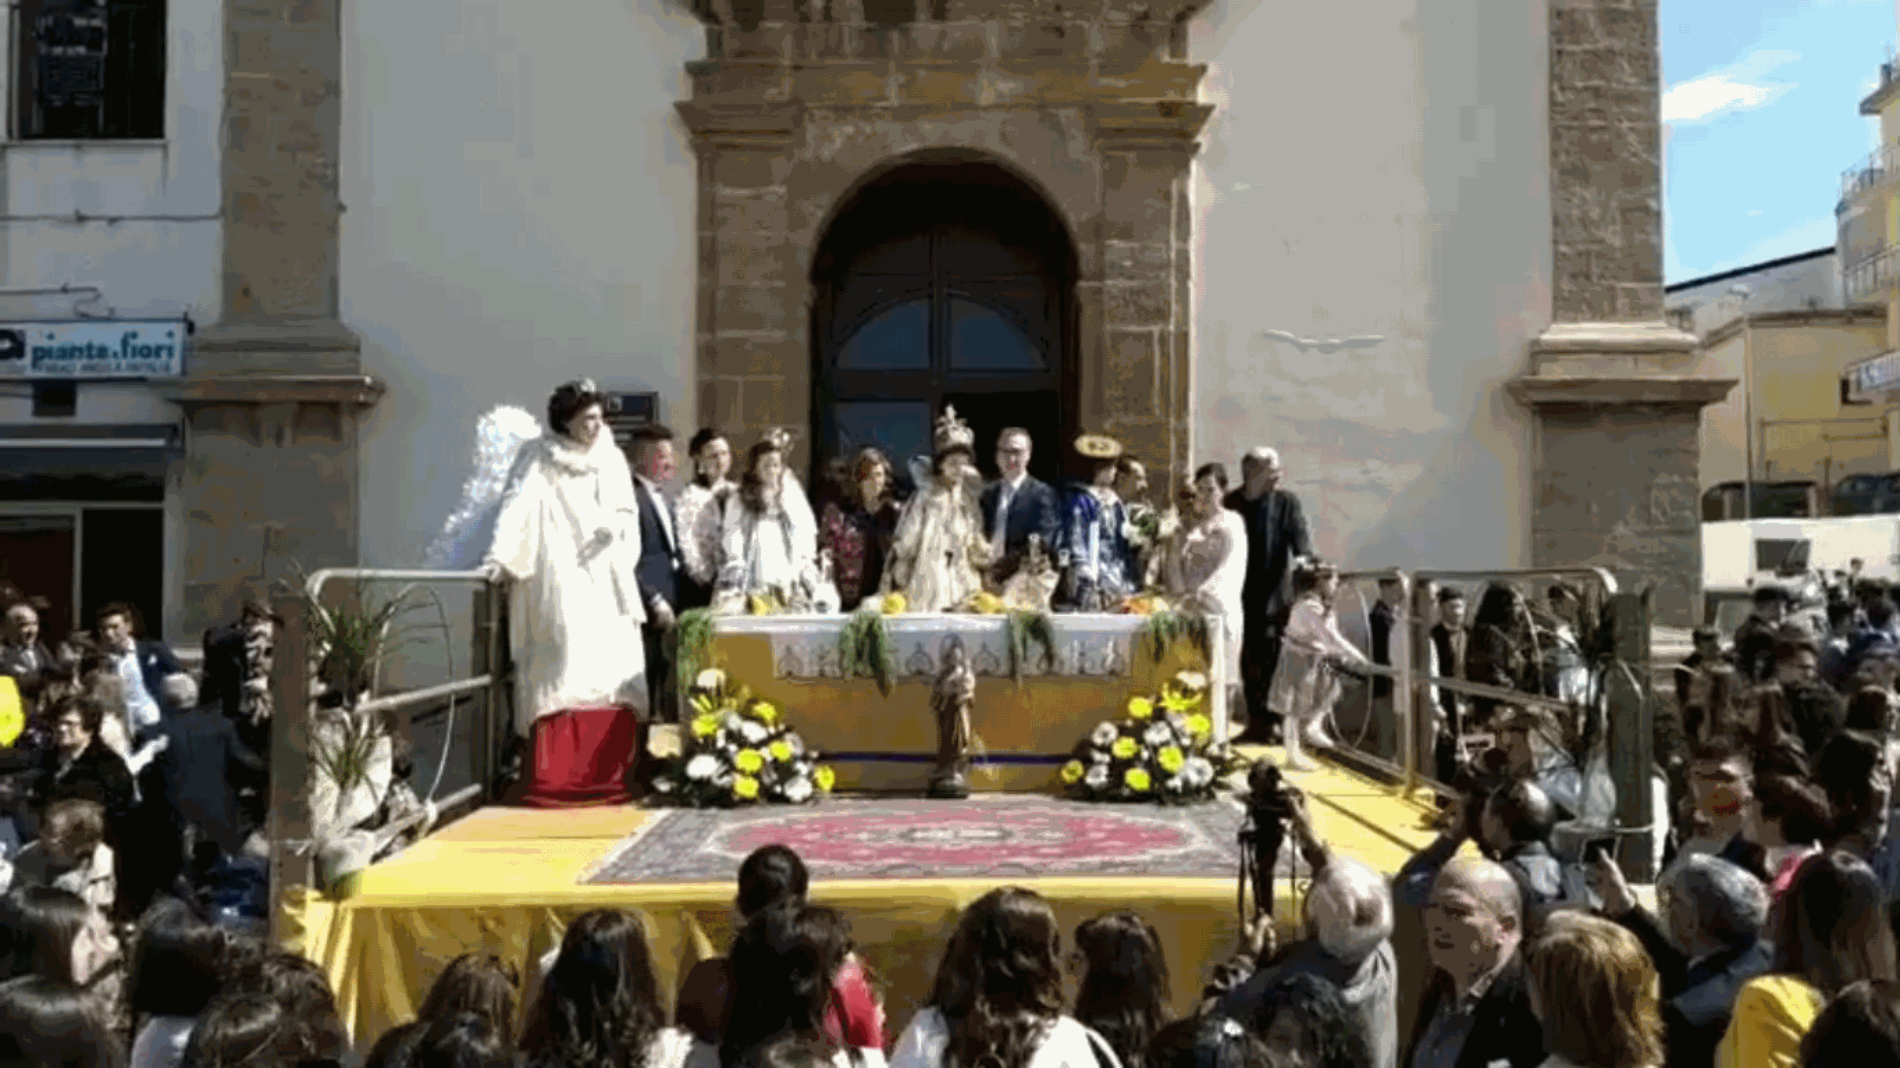 Barrafranca. [VIDEO] La Fuga in Egitto, la tavolata di San Giuseppe 2019